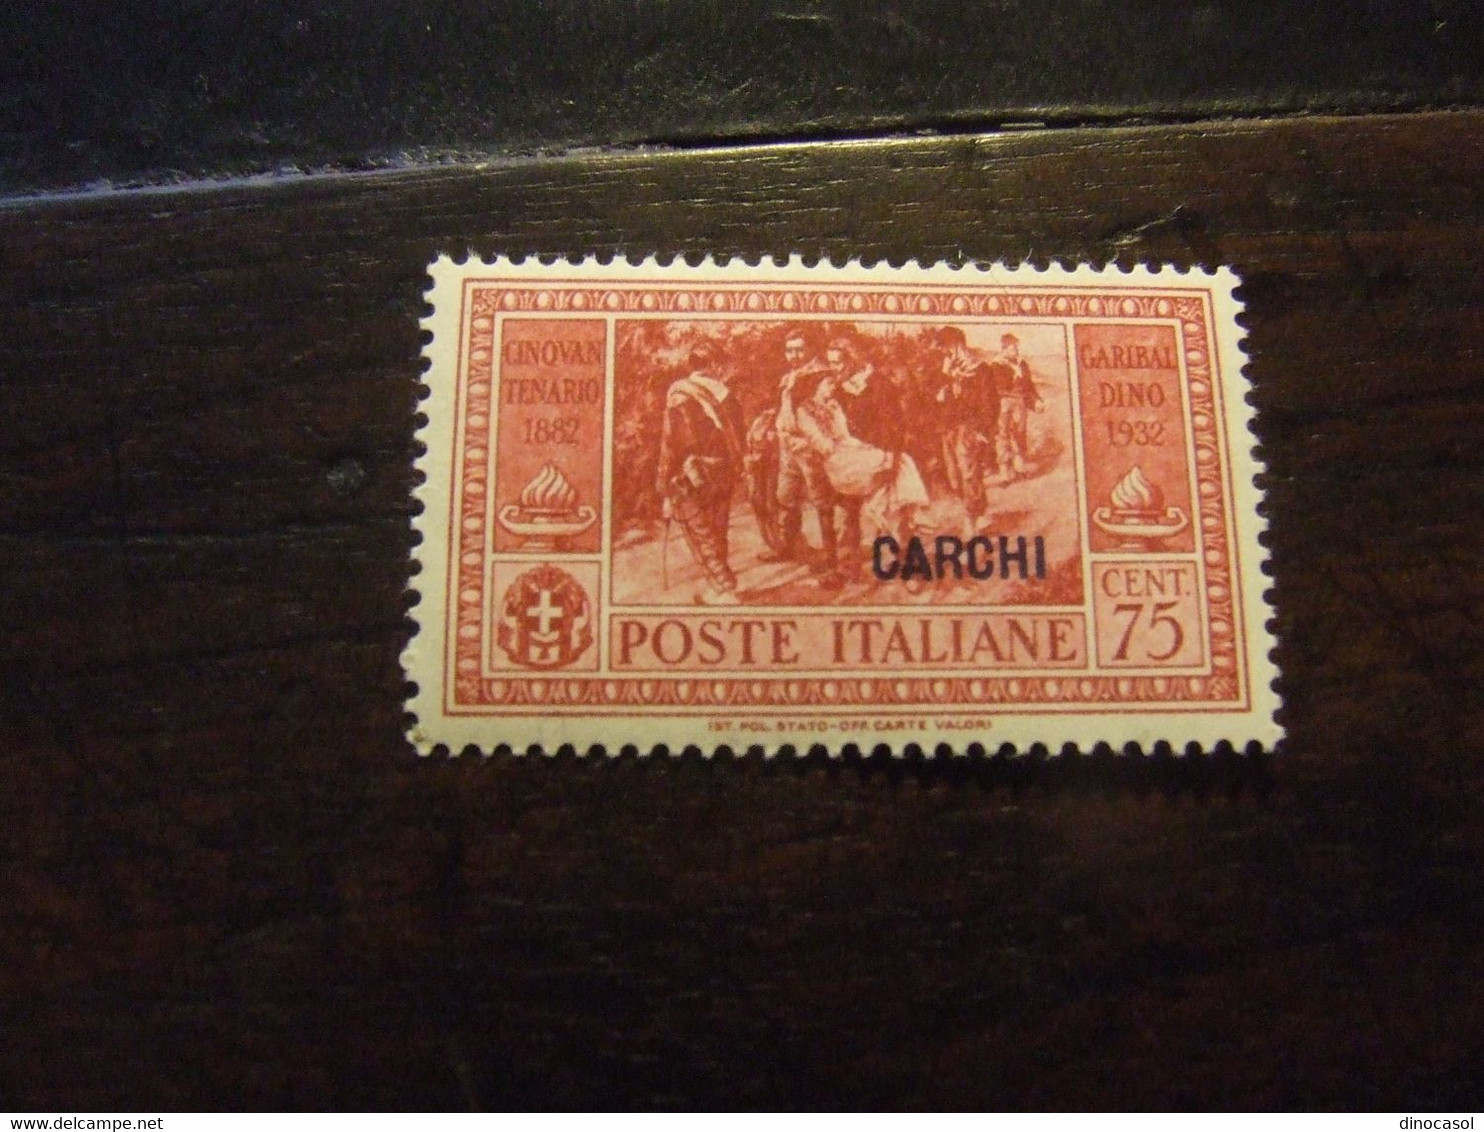 CARCHI 1932 GARIBALDI 75 C NUOVO * - Aegean (Carchi)